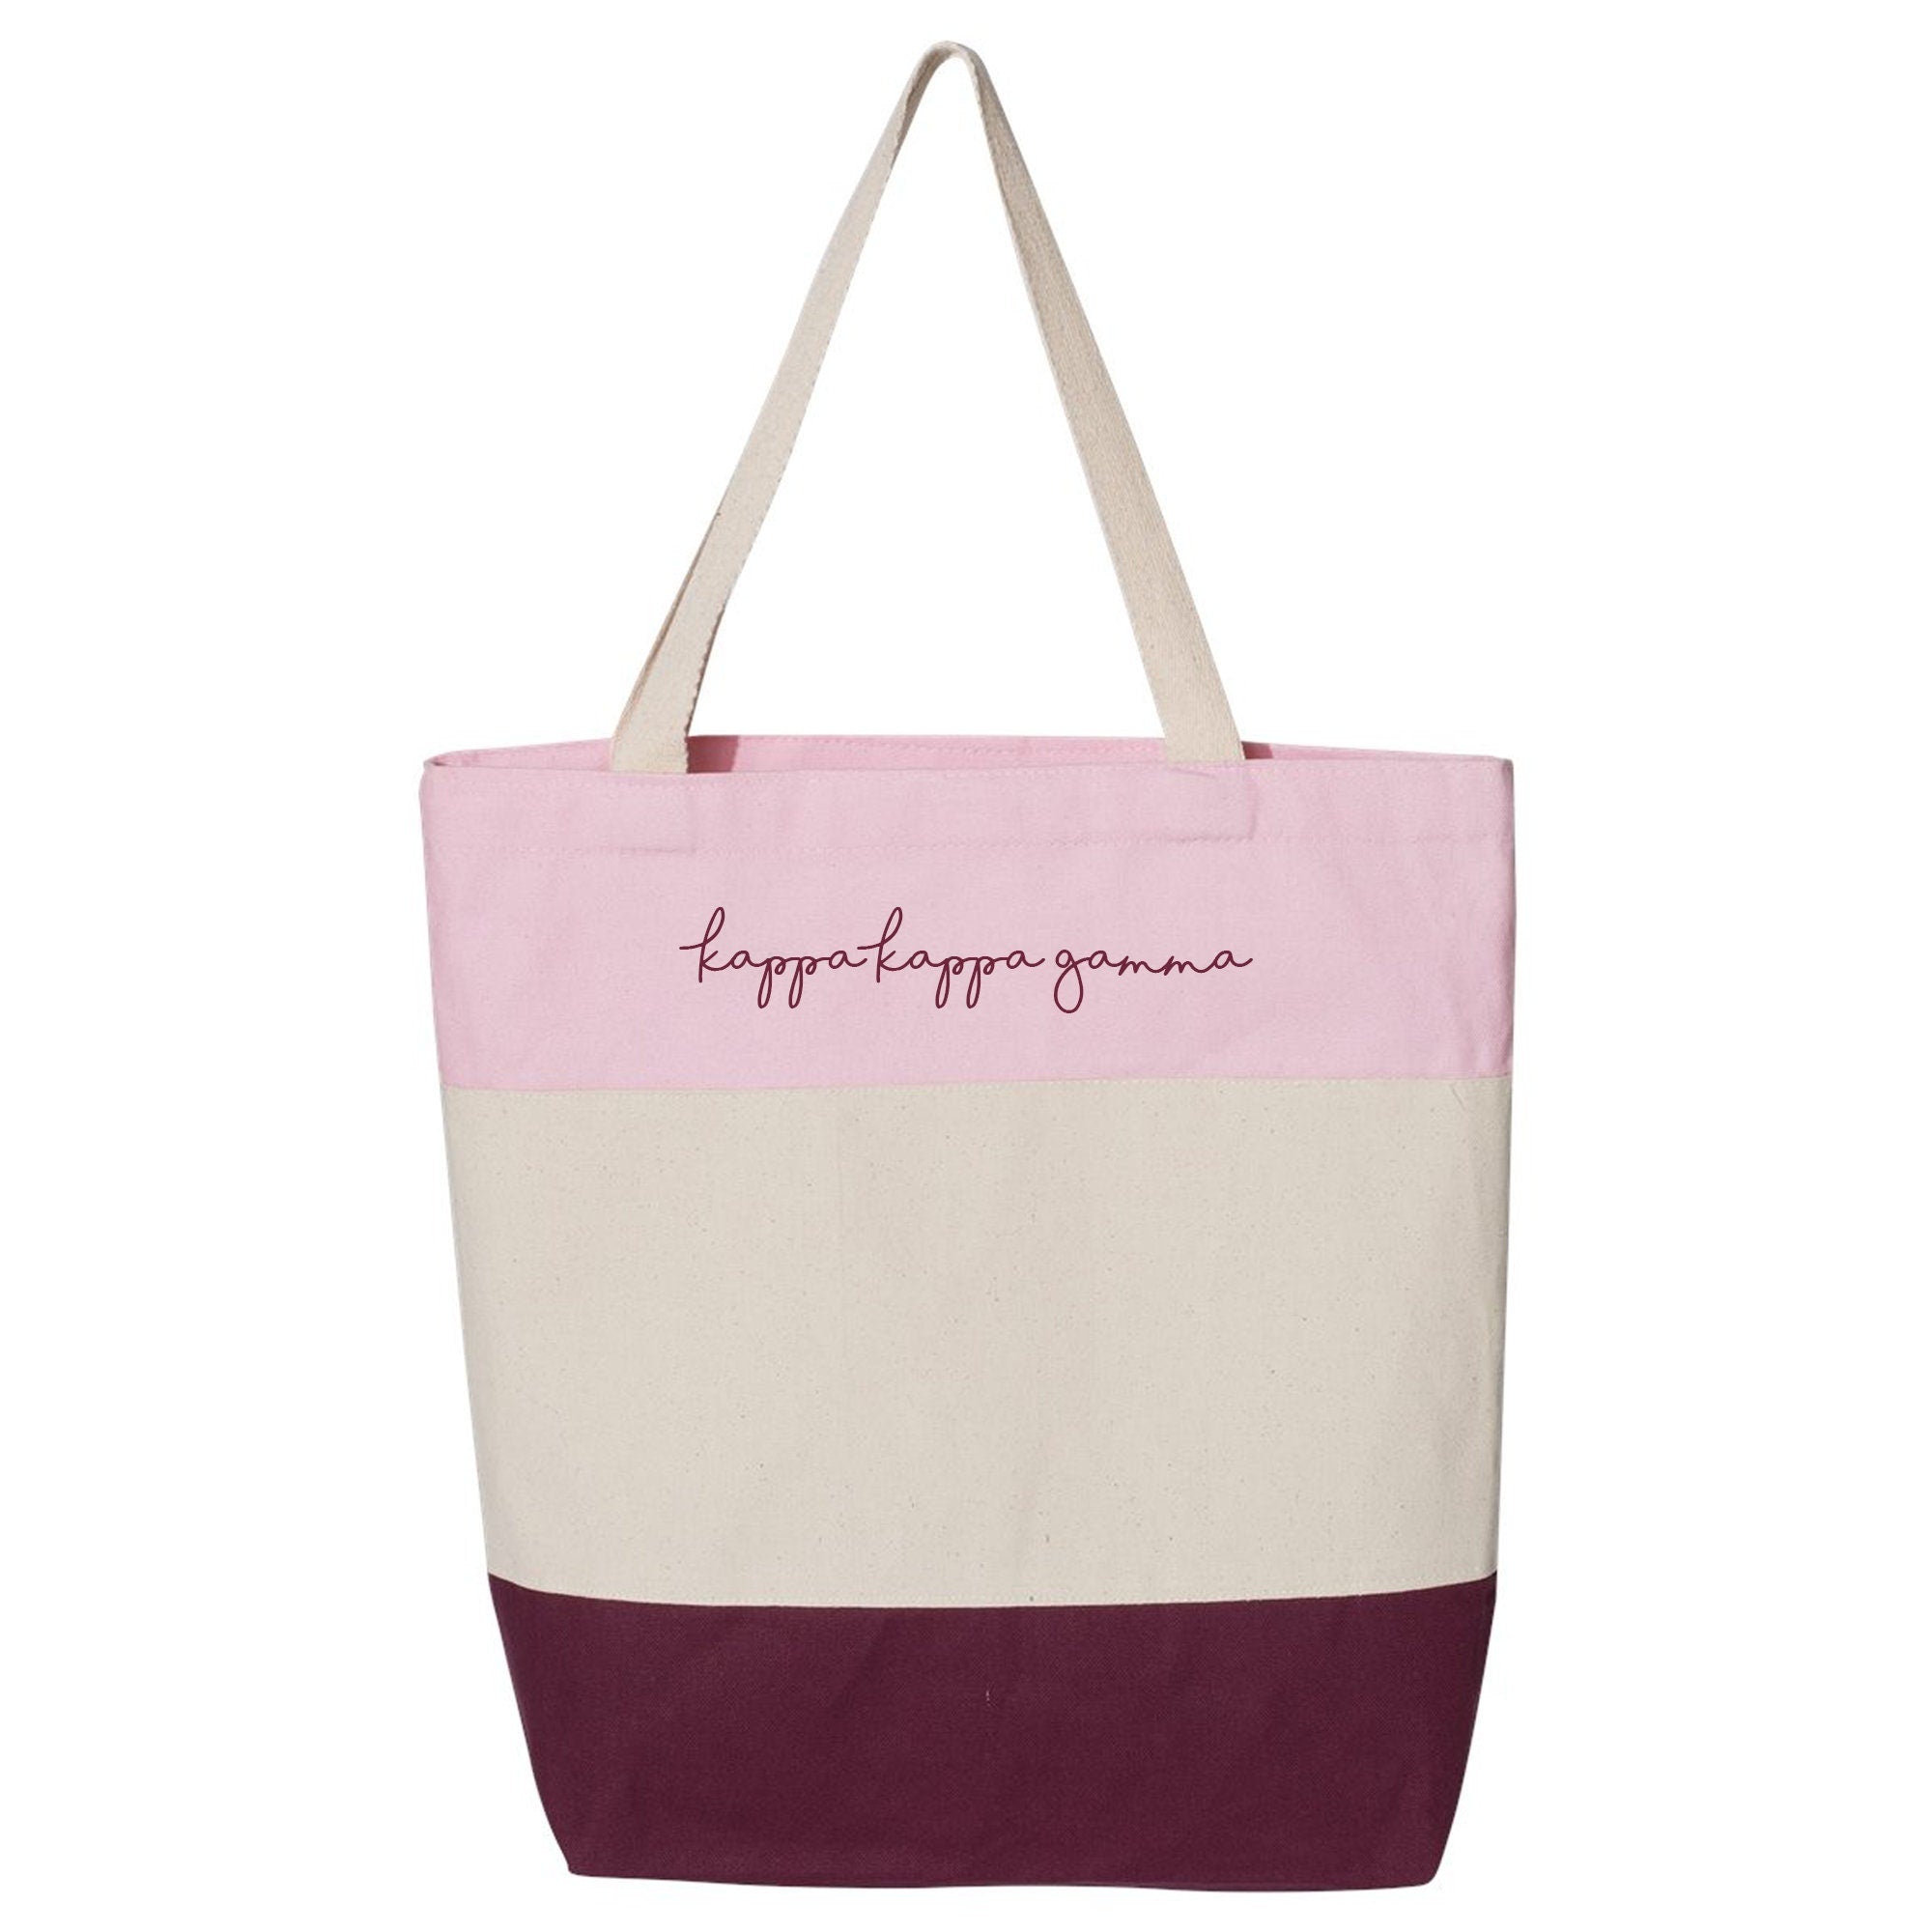 Kappa Kappa Gamma - Tote Bag, Sorority Gift, Bid Day Gift, Big & Little Reveal - Go Greek Chic